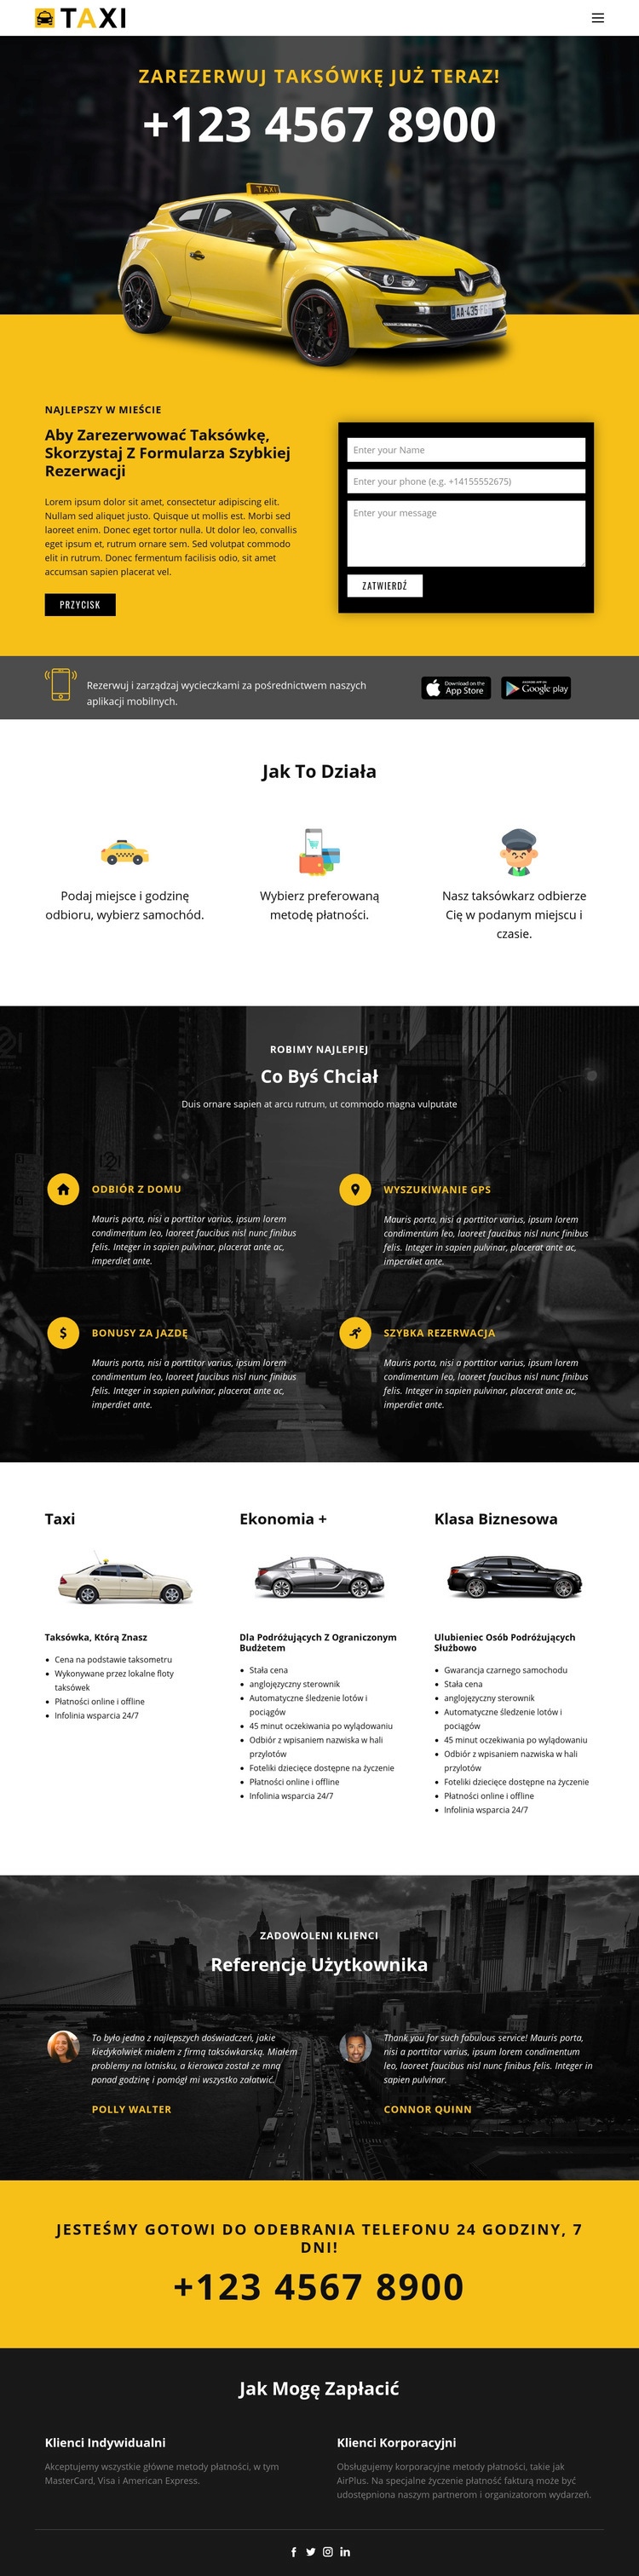 Najszybsze taksówki Projekt strony internetowej